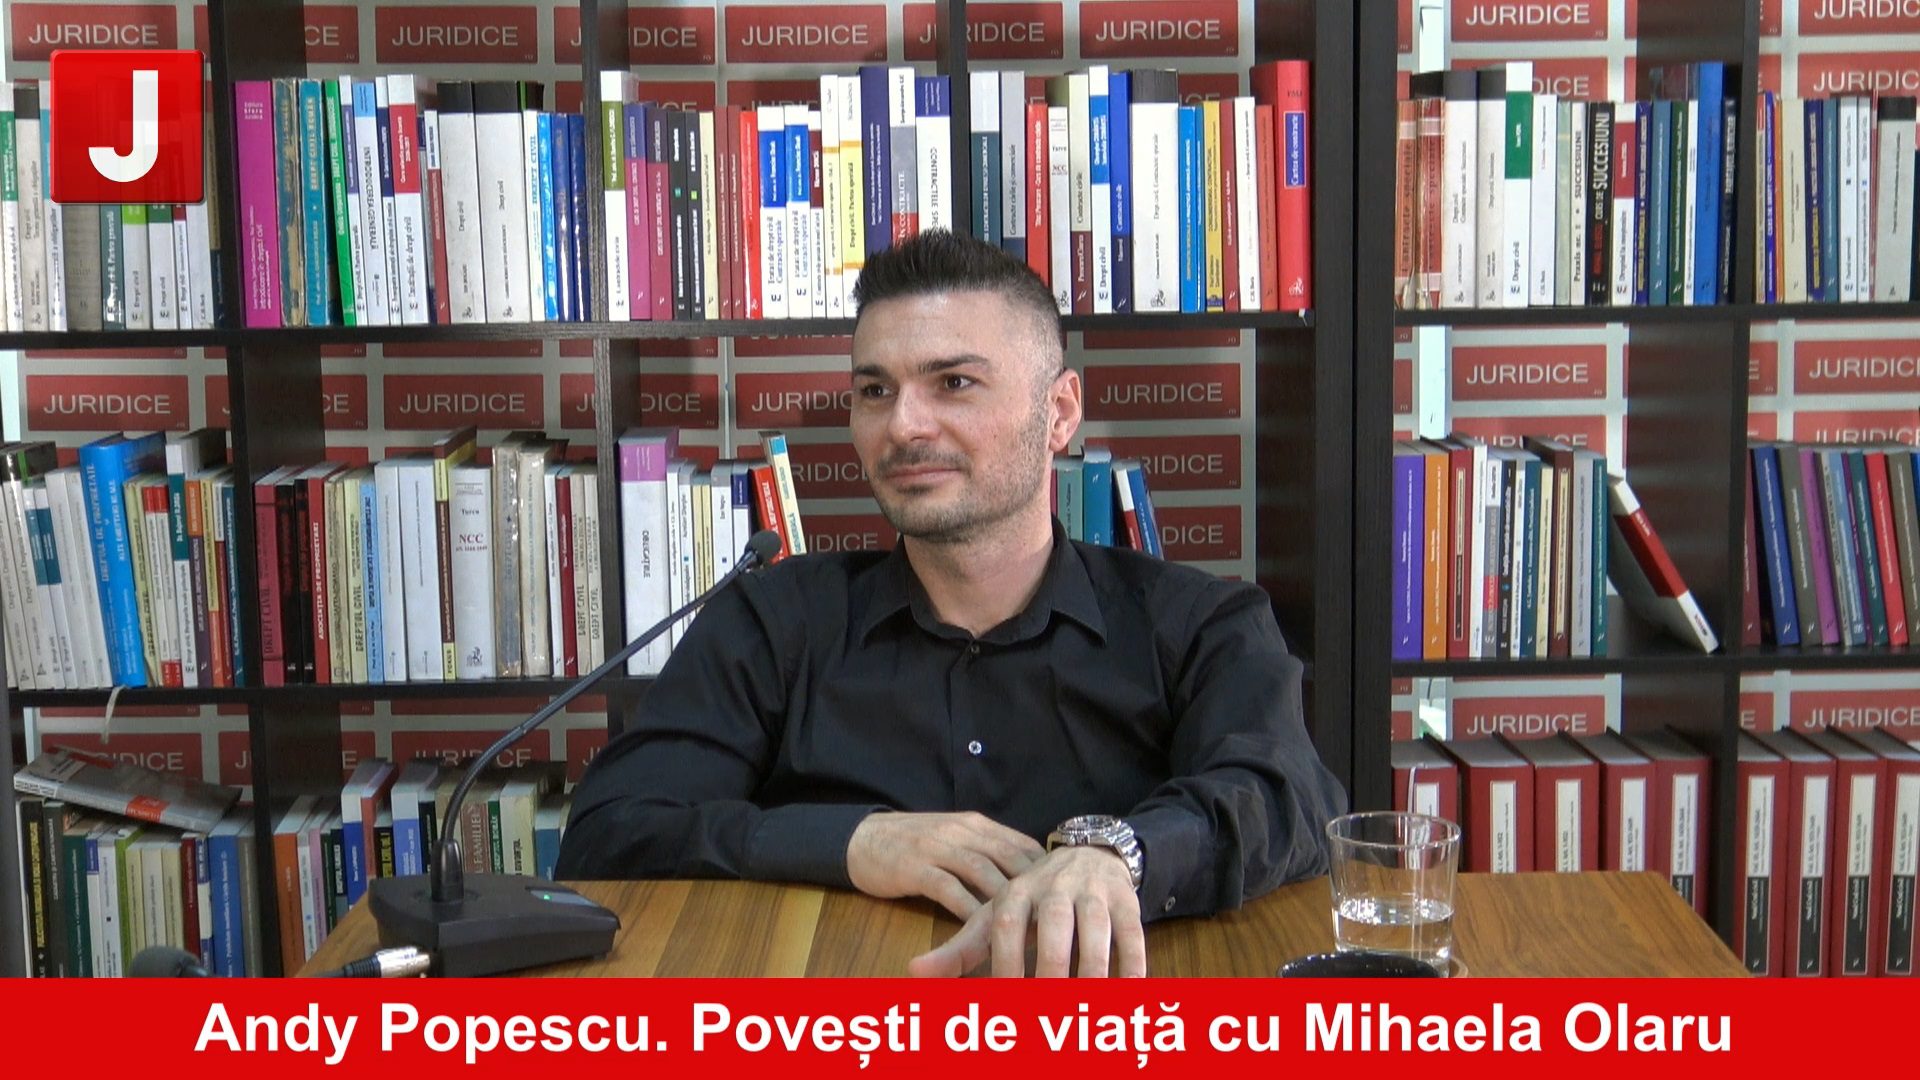 Vlogger-ul care a cucerit inimile tinerilor, Andy Popescu | Povești de viață cu Mihaela Olaru